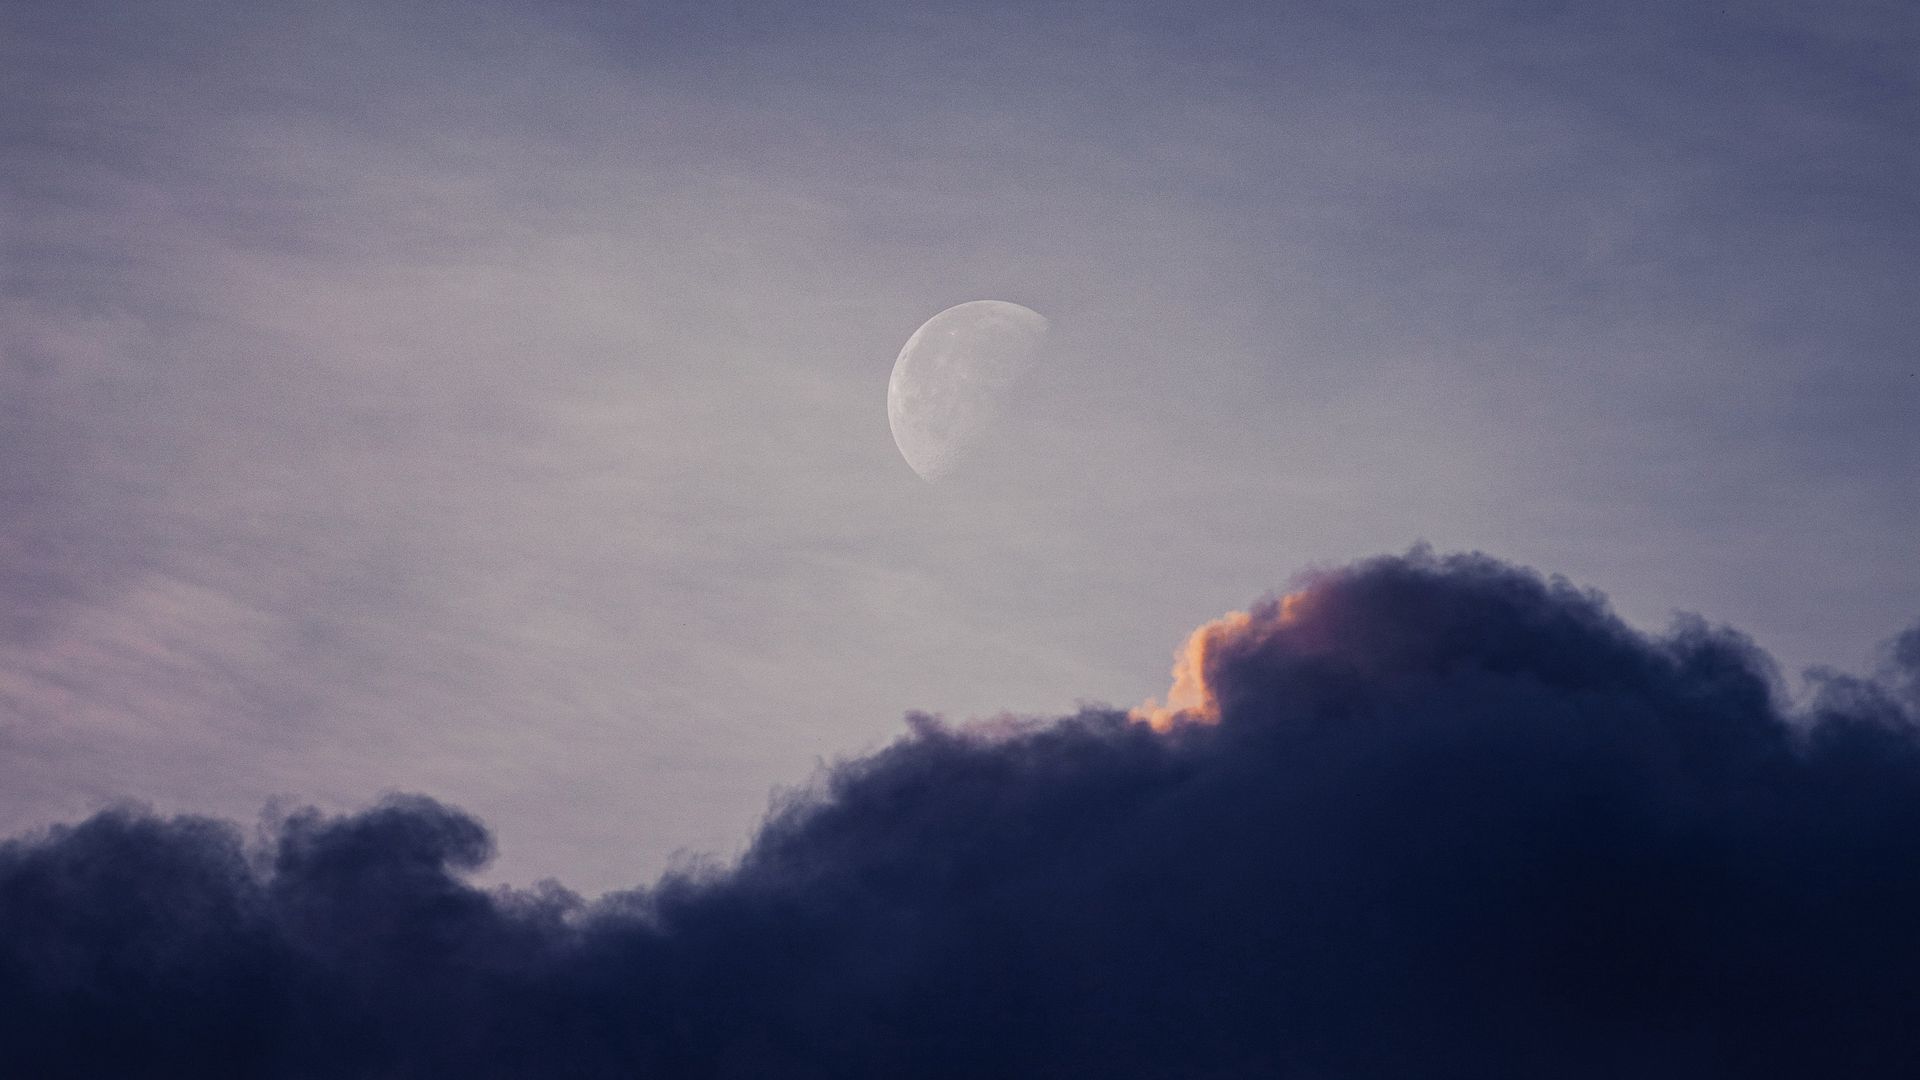 Вечернее небо с облаками и луной